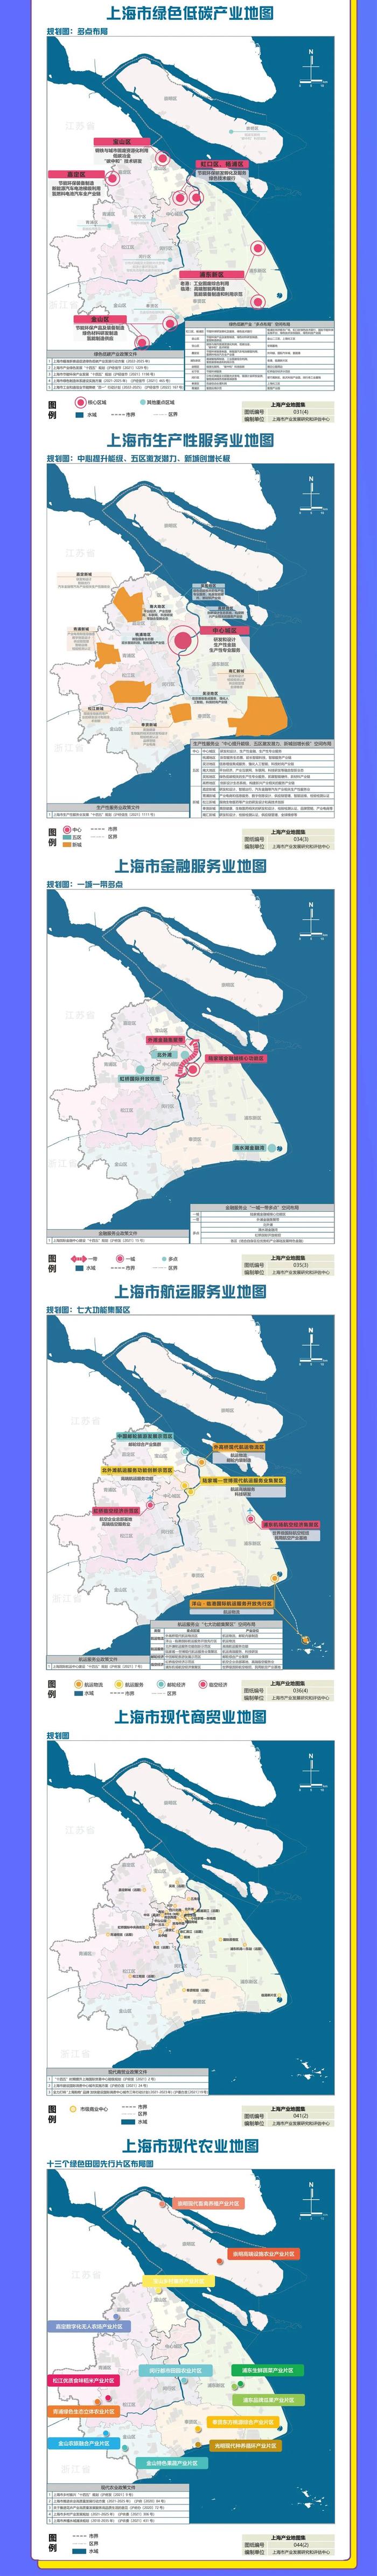 一图读懂上海市产业地图